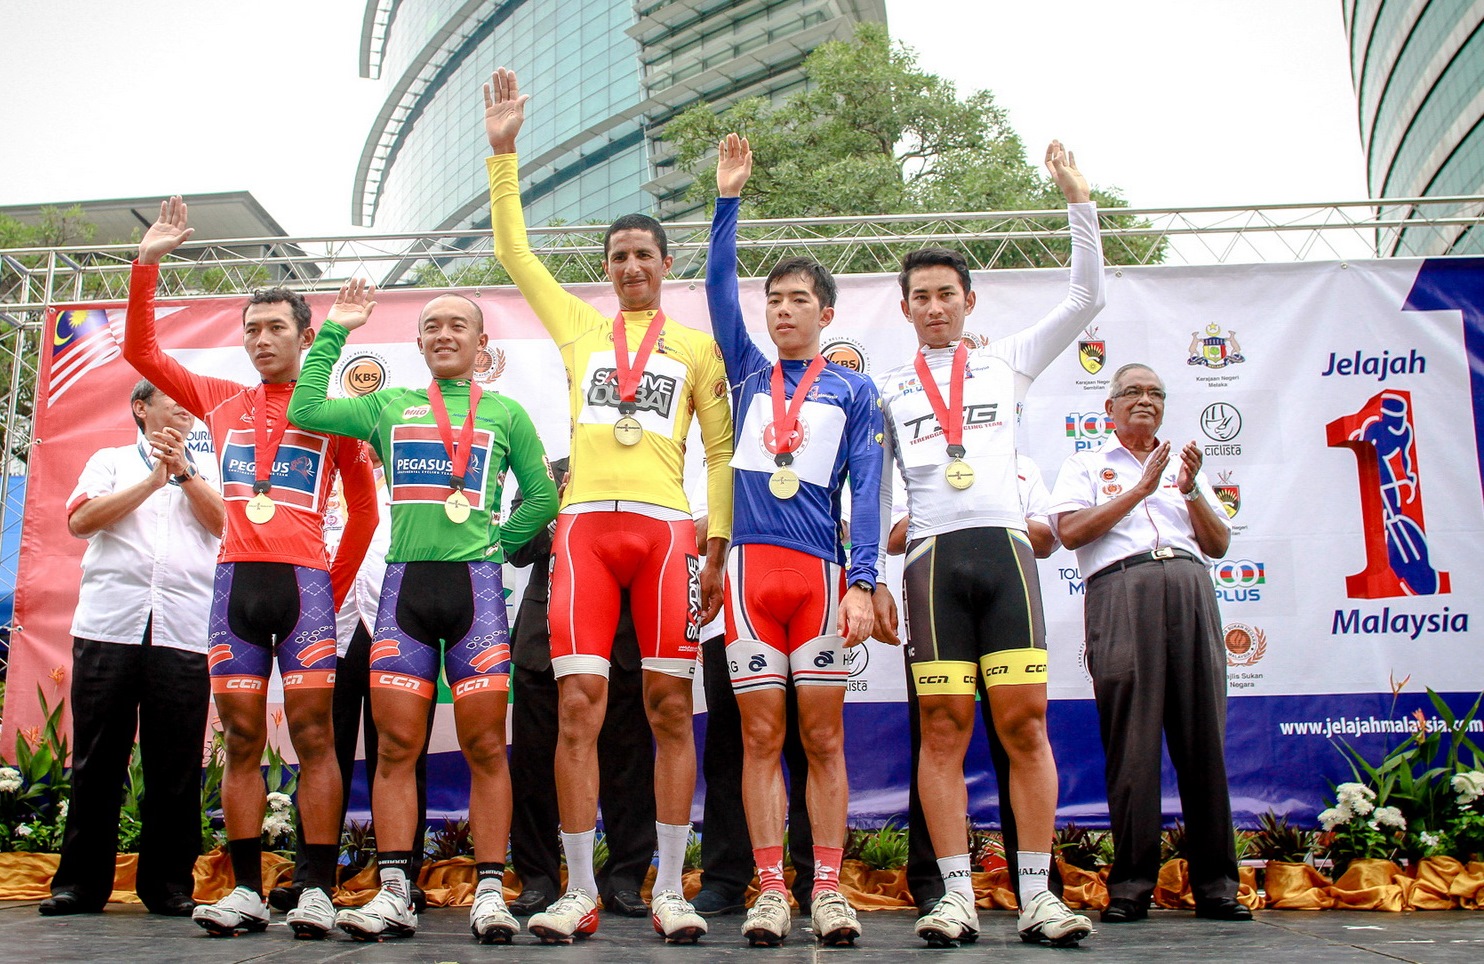 Jelajah Malaysia 2014 - Stage 4 - Winner